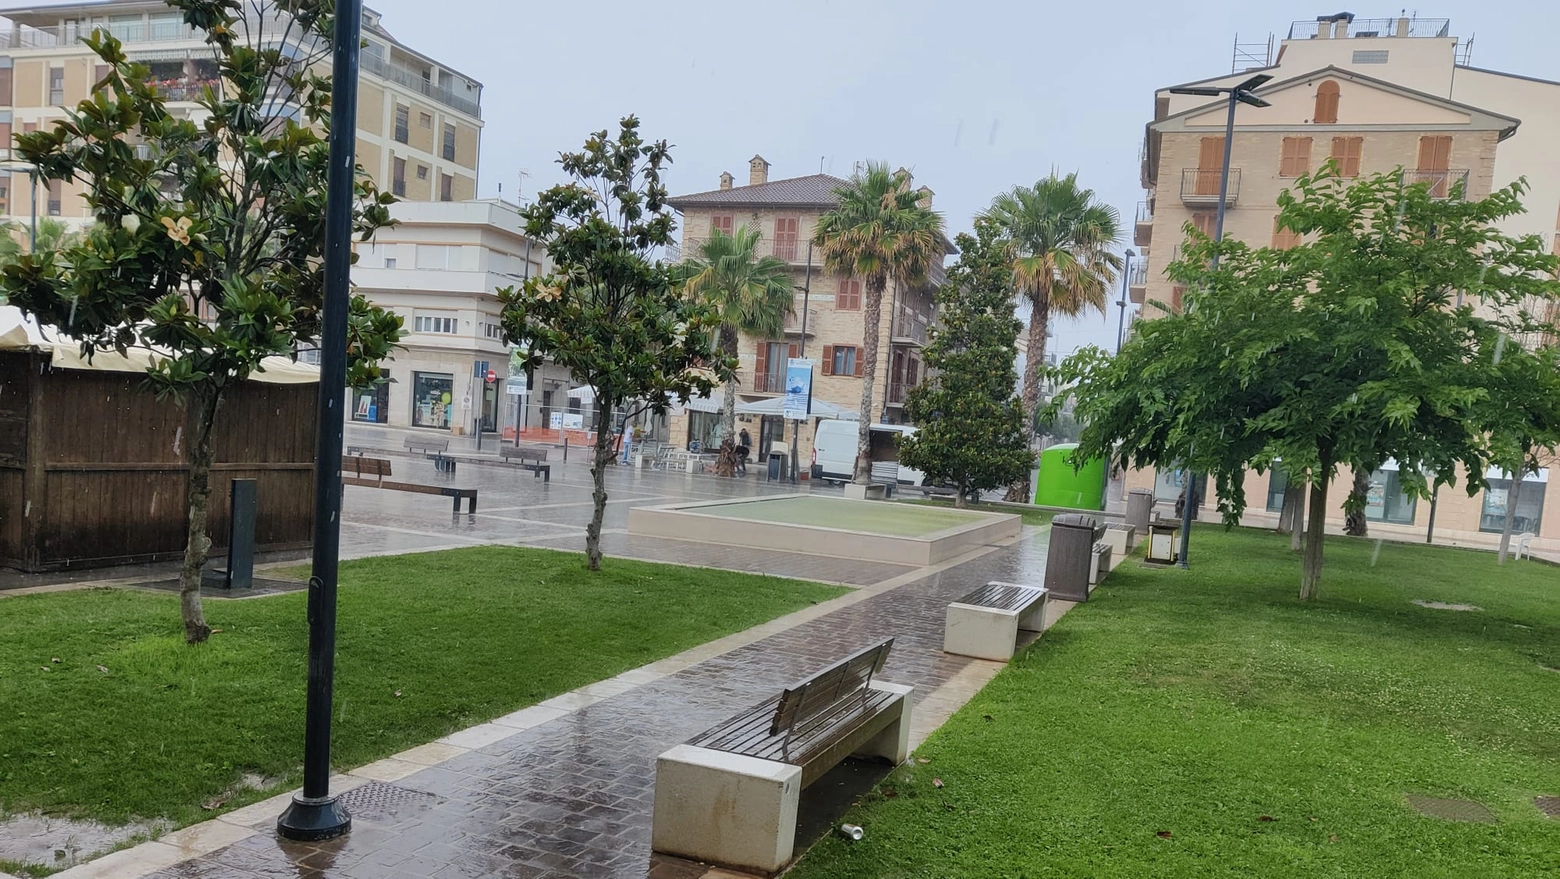 Martedì (11 giugno) mattino piovoso a Porto Sant'Elpidio